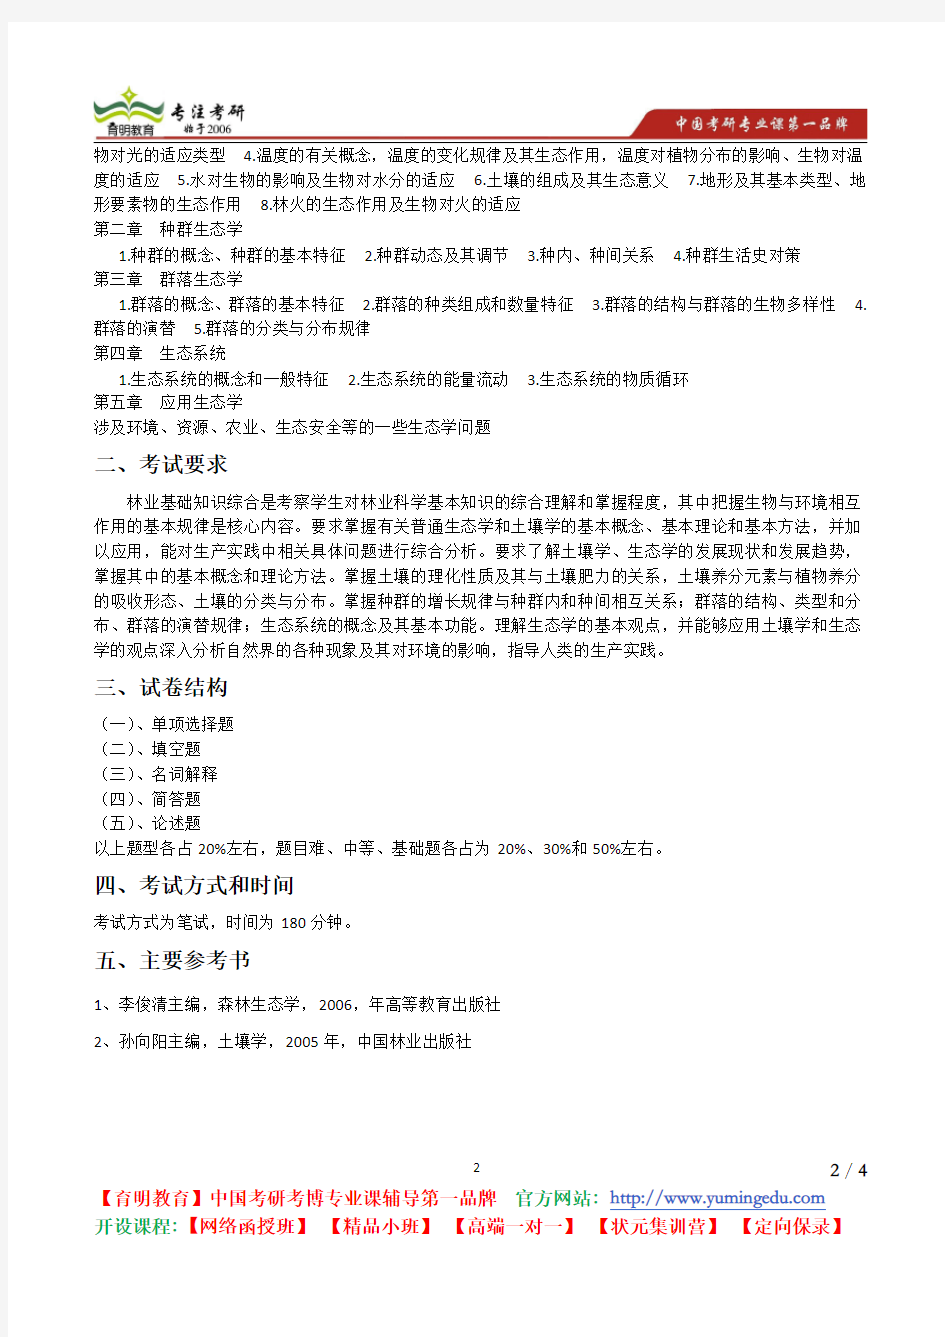 北京林业大学 2014年《345林业基础知识综合》考试大纲 考试内容 复习参考书 考研辅导